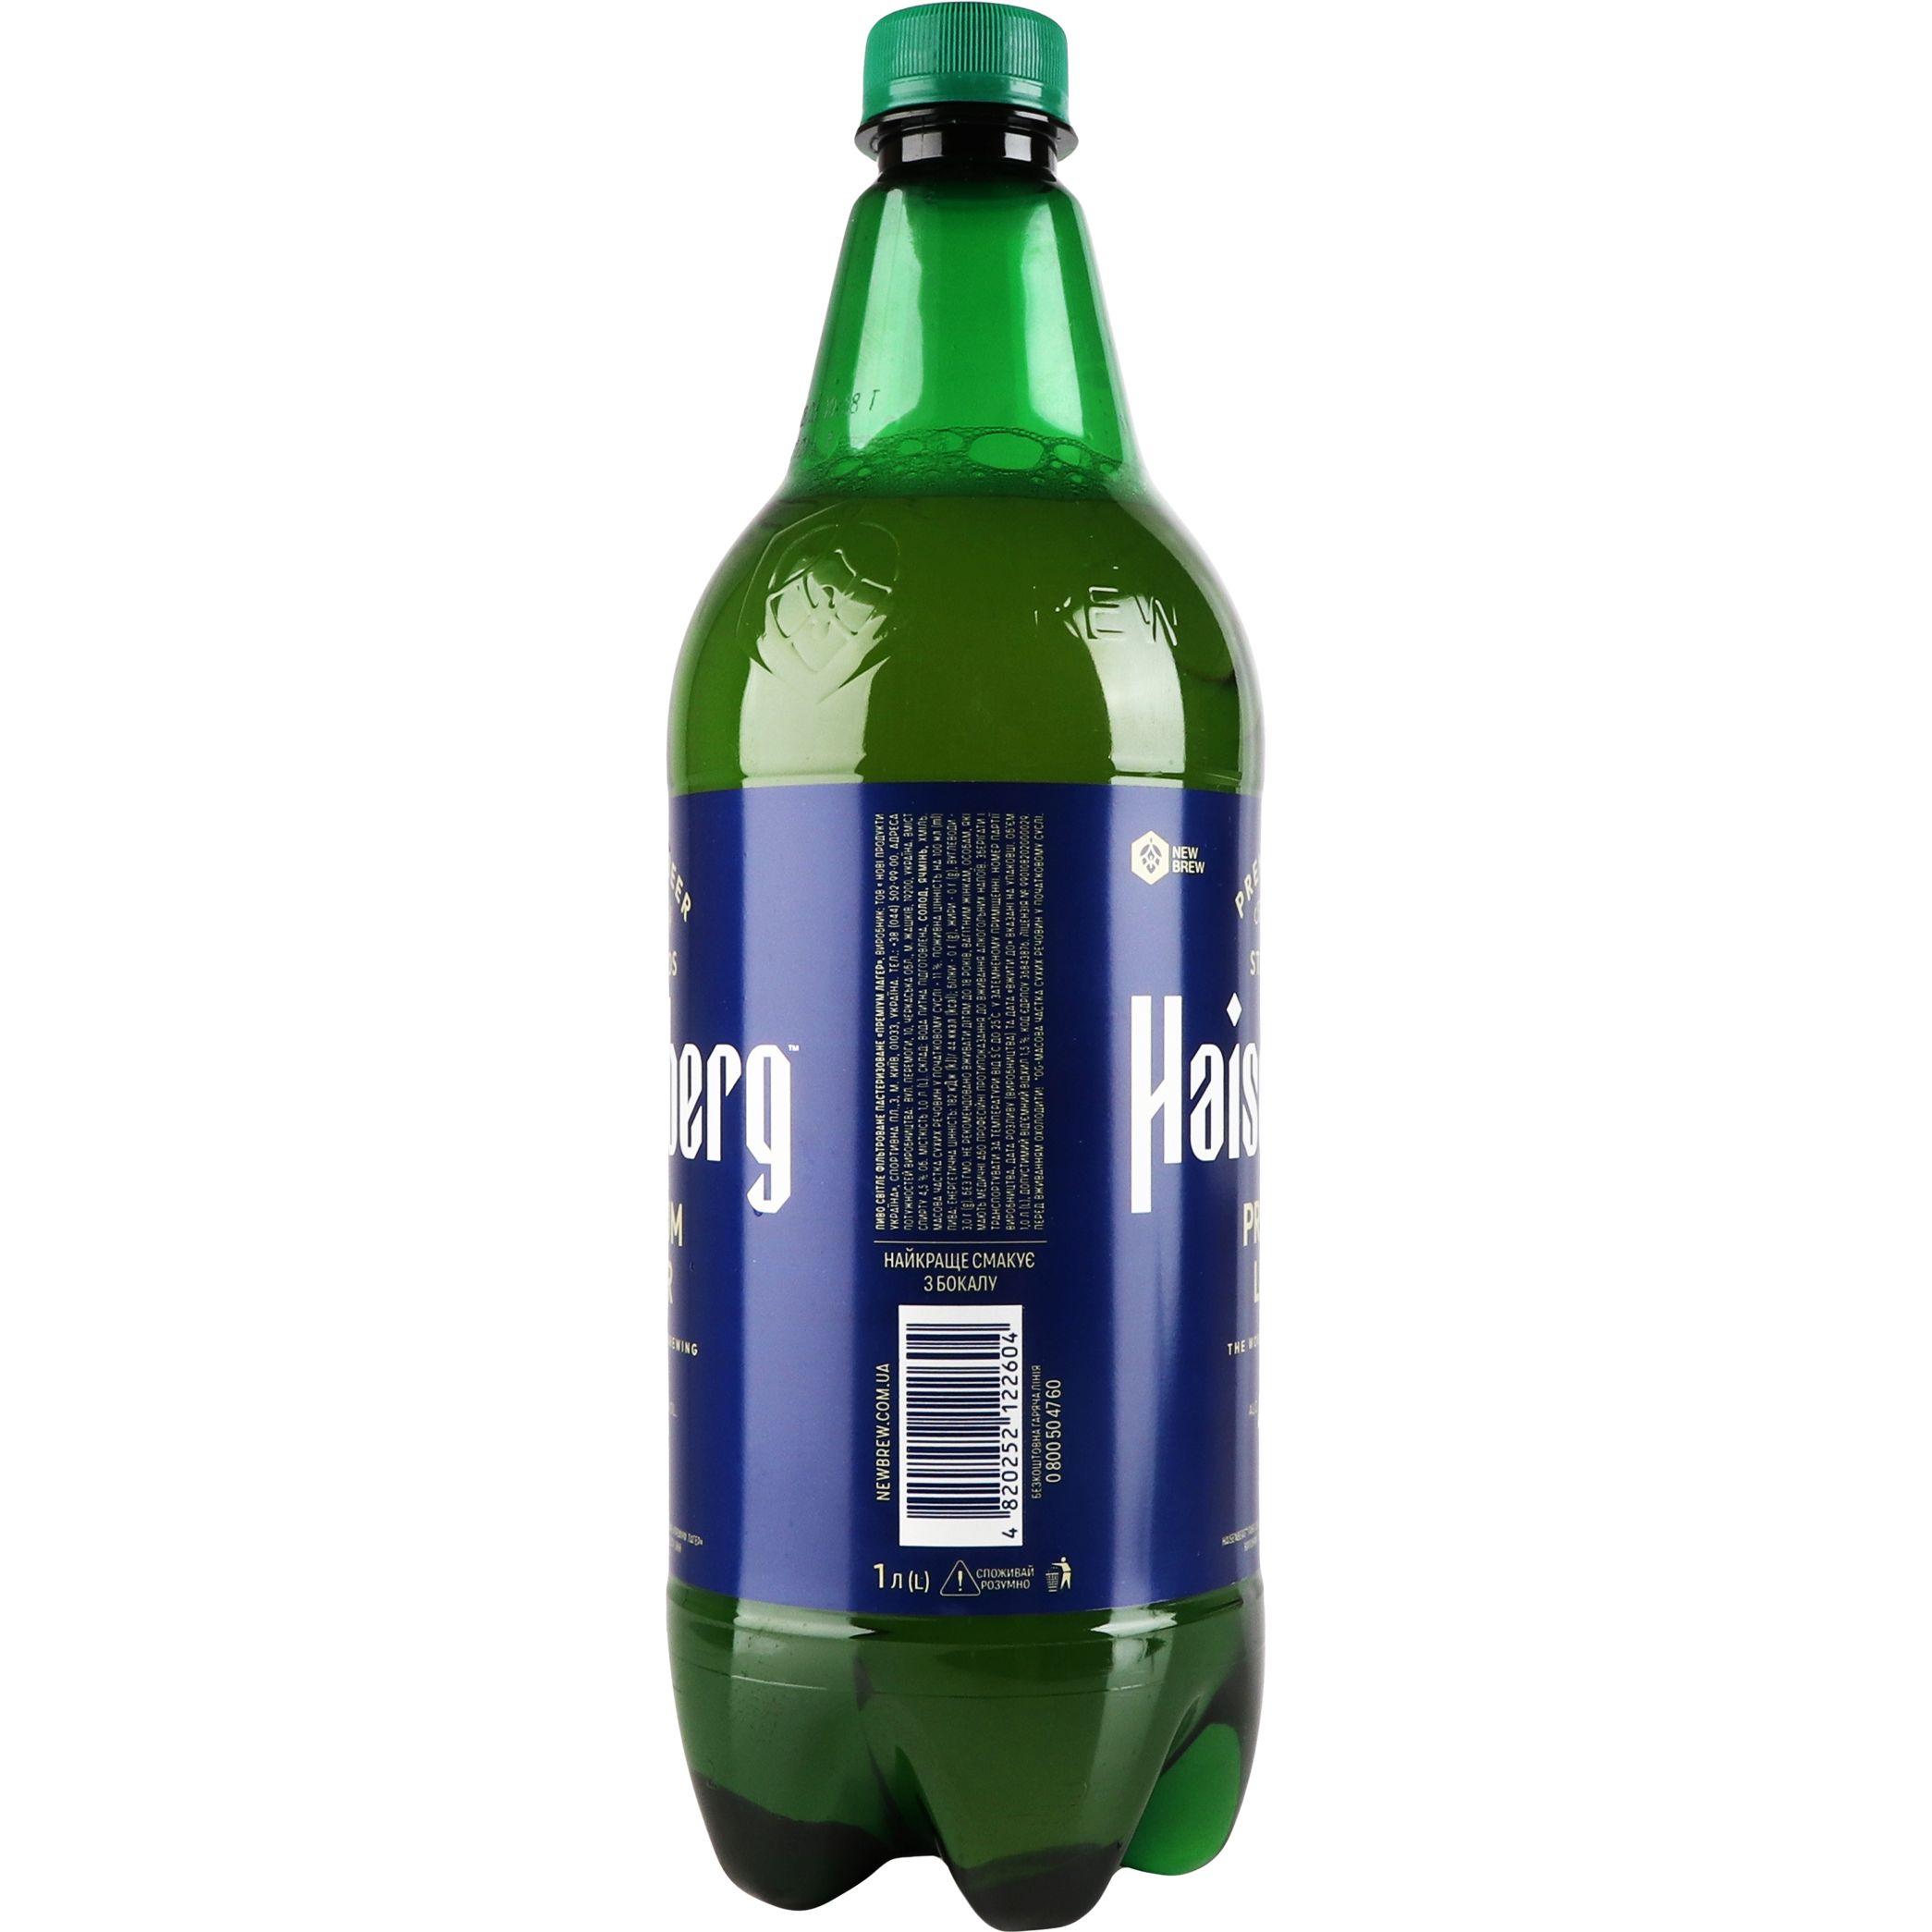 Пиво Haisenberg Premium Lager светлое 4.5% 1 л - фото 3